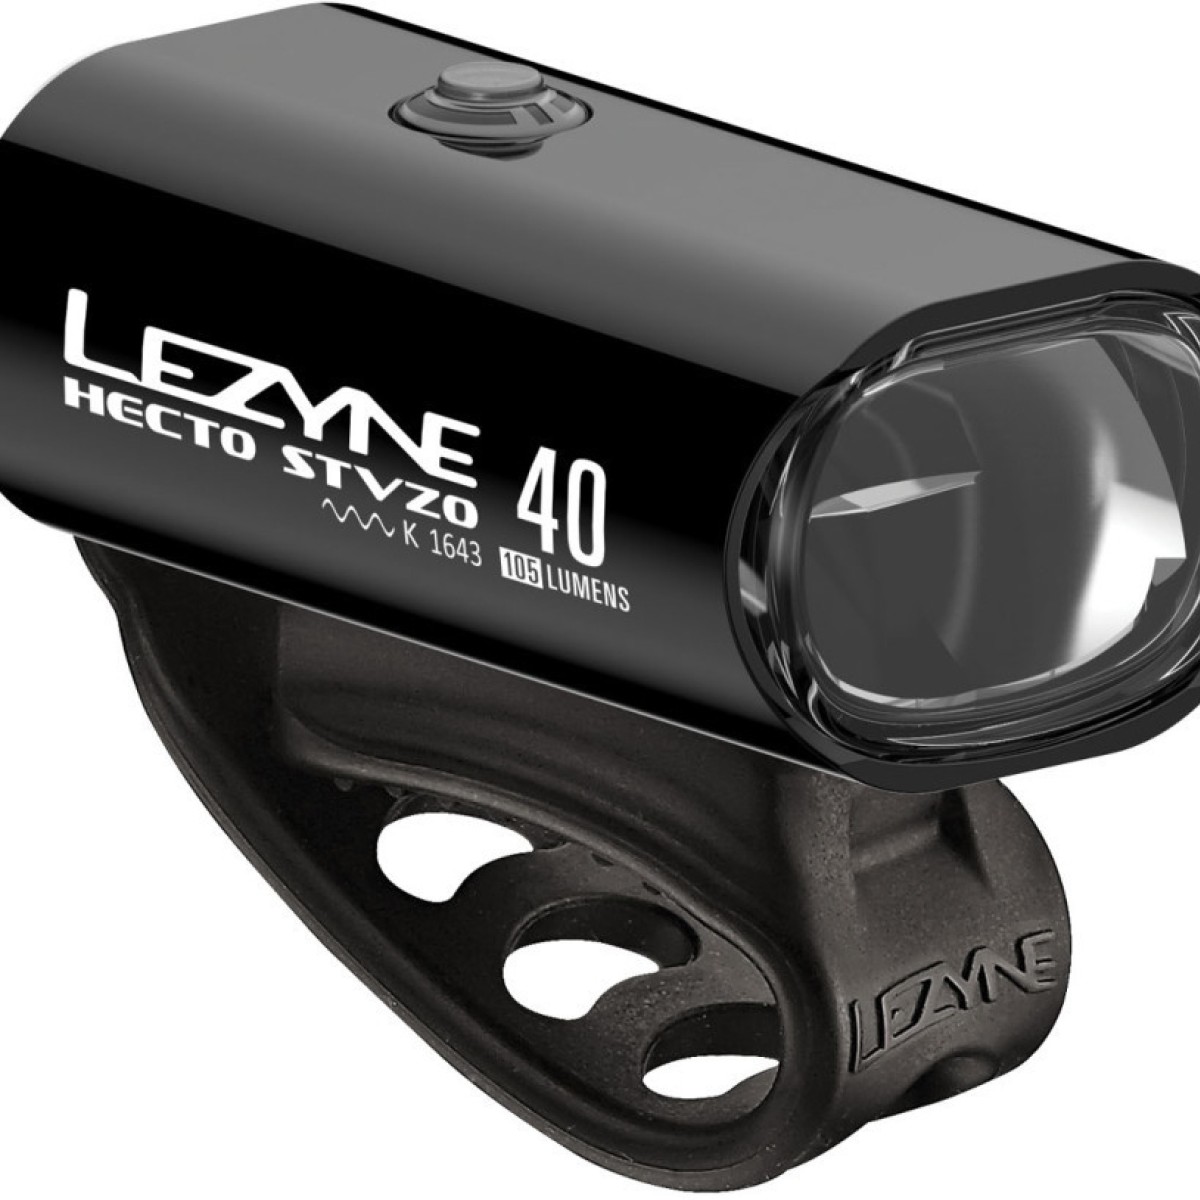 Lezyne HECTO DRIVE STVZO 40 + FEMTO STVZO - Fahrradbeleuchtung  Fahrradbeleuchtung